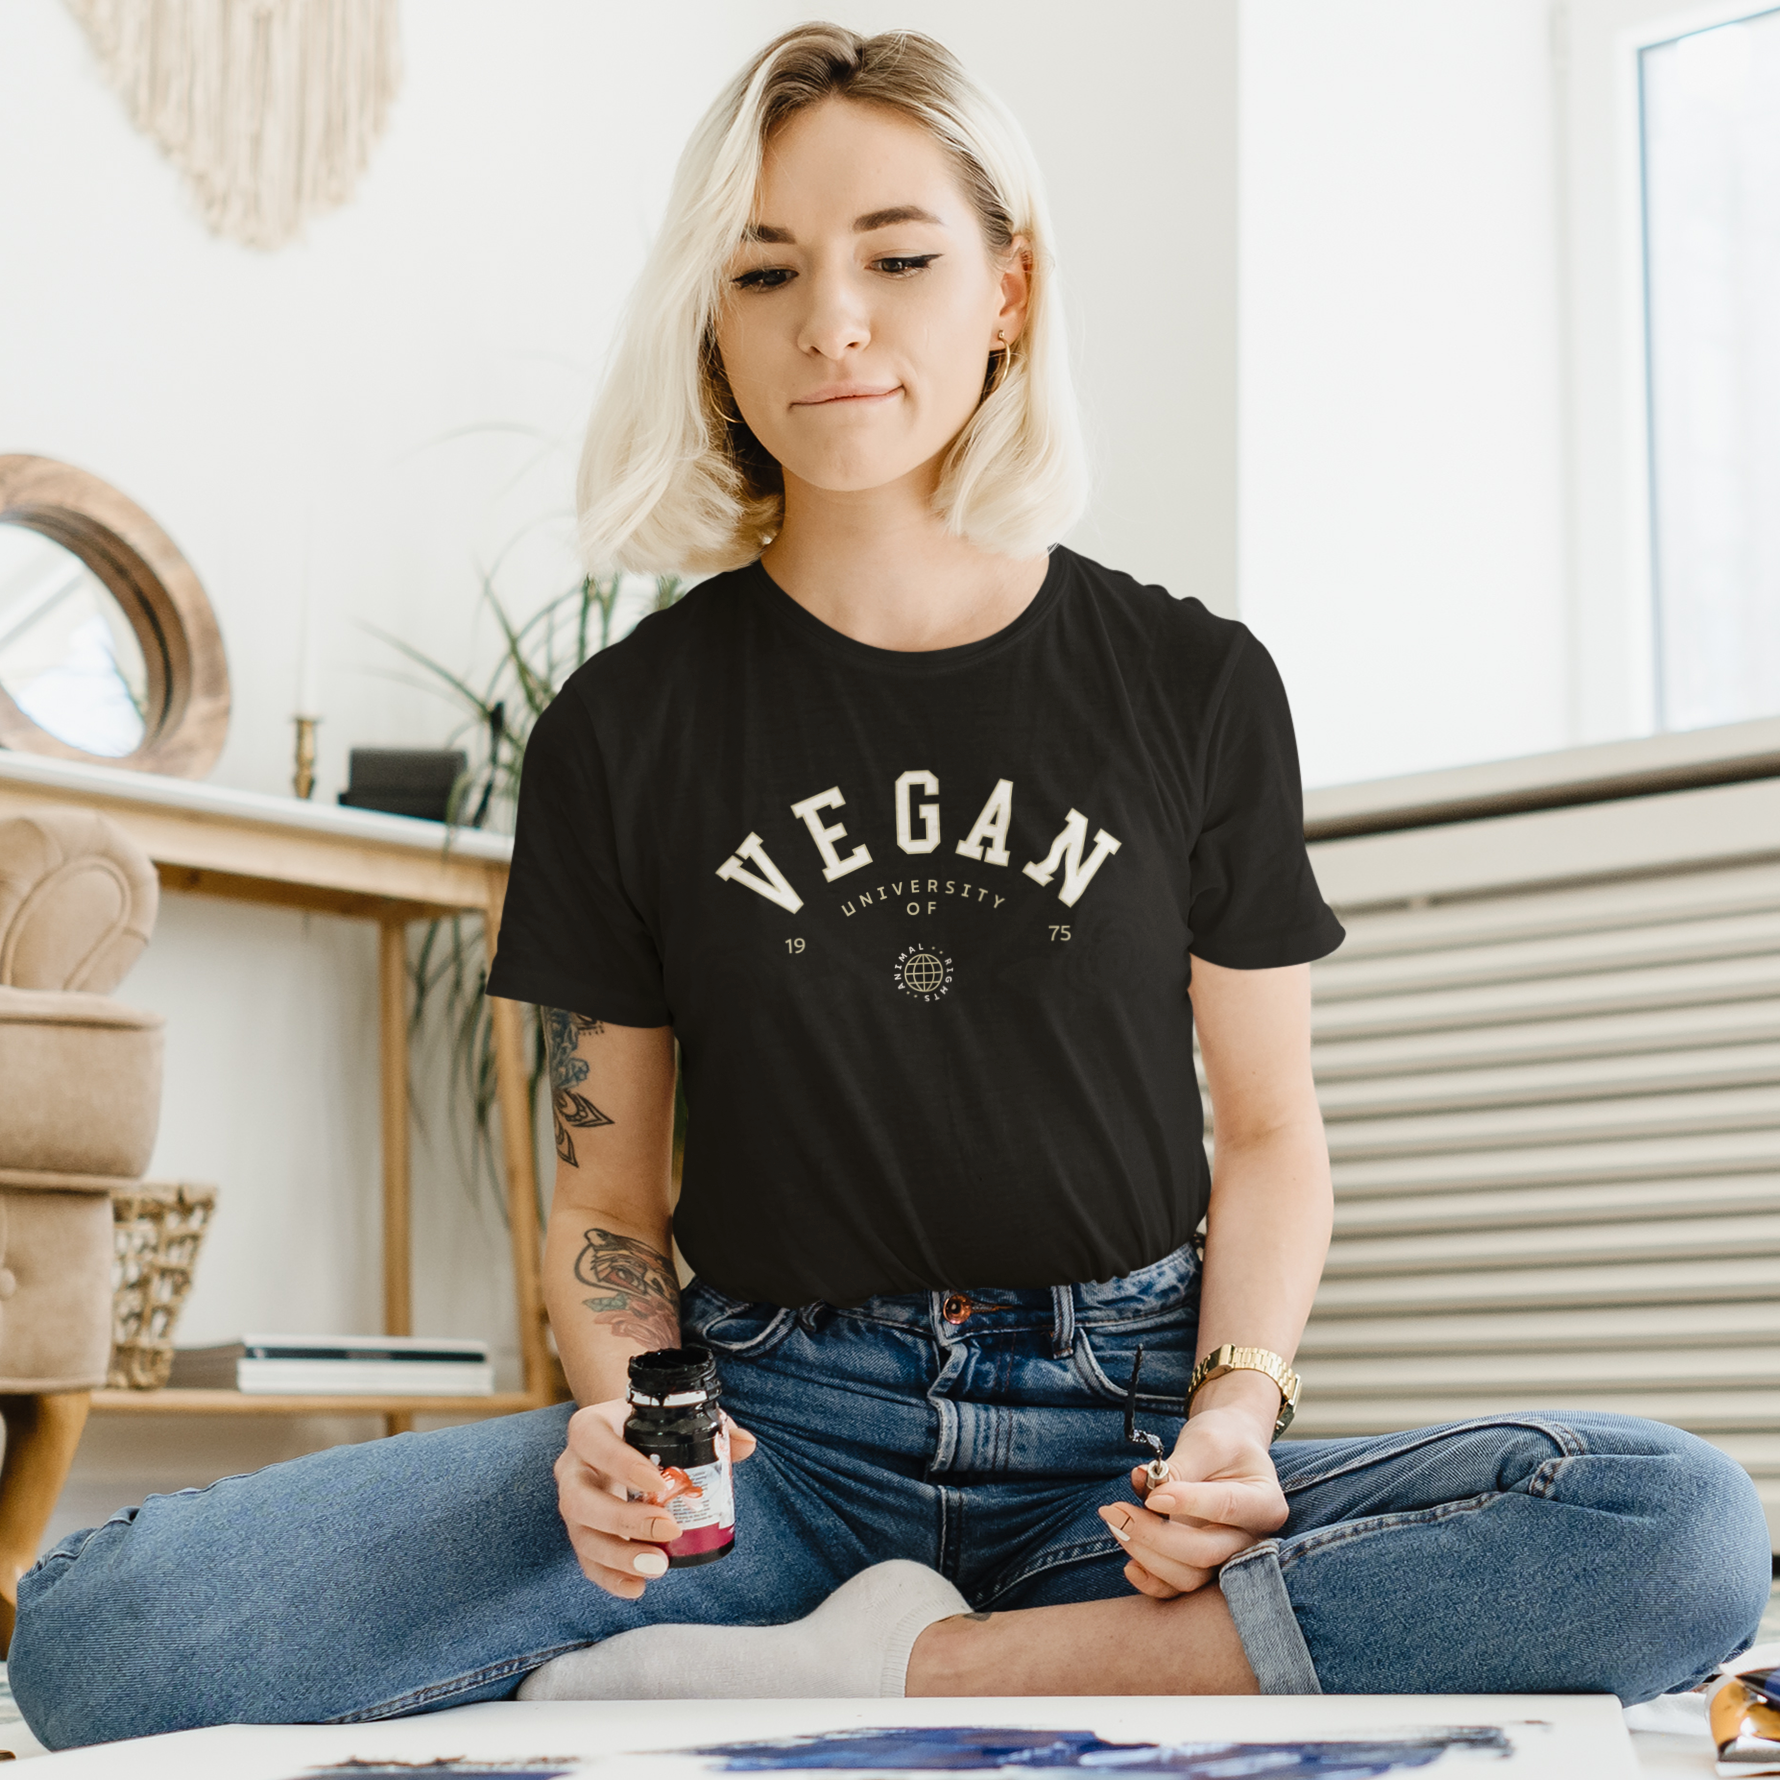 Vegan University of Animal Rights - Damen T-Shirt